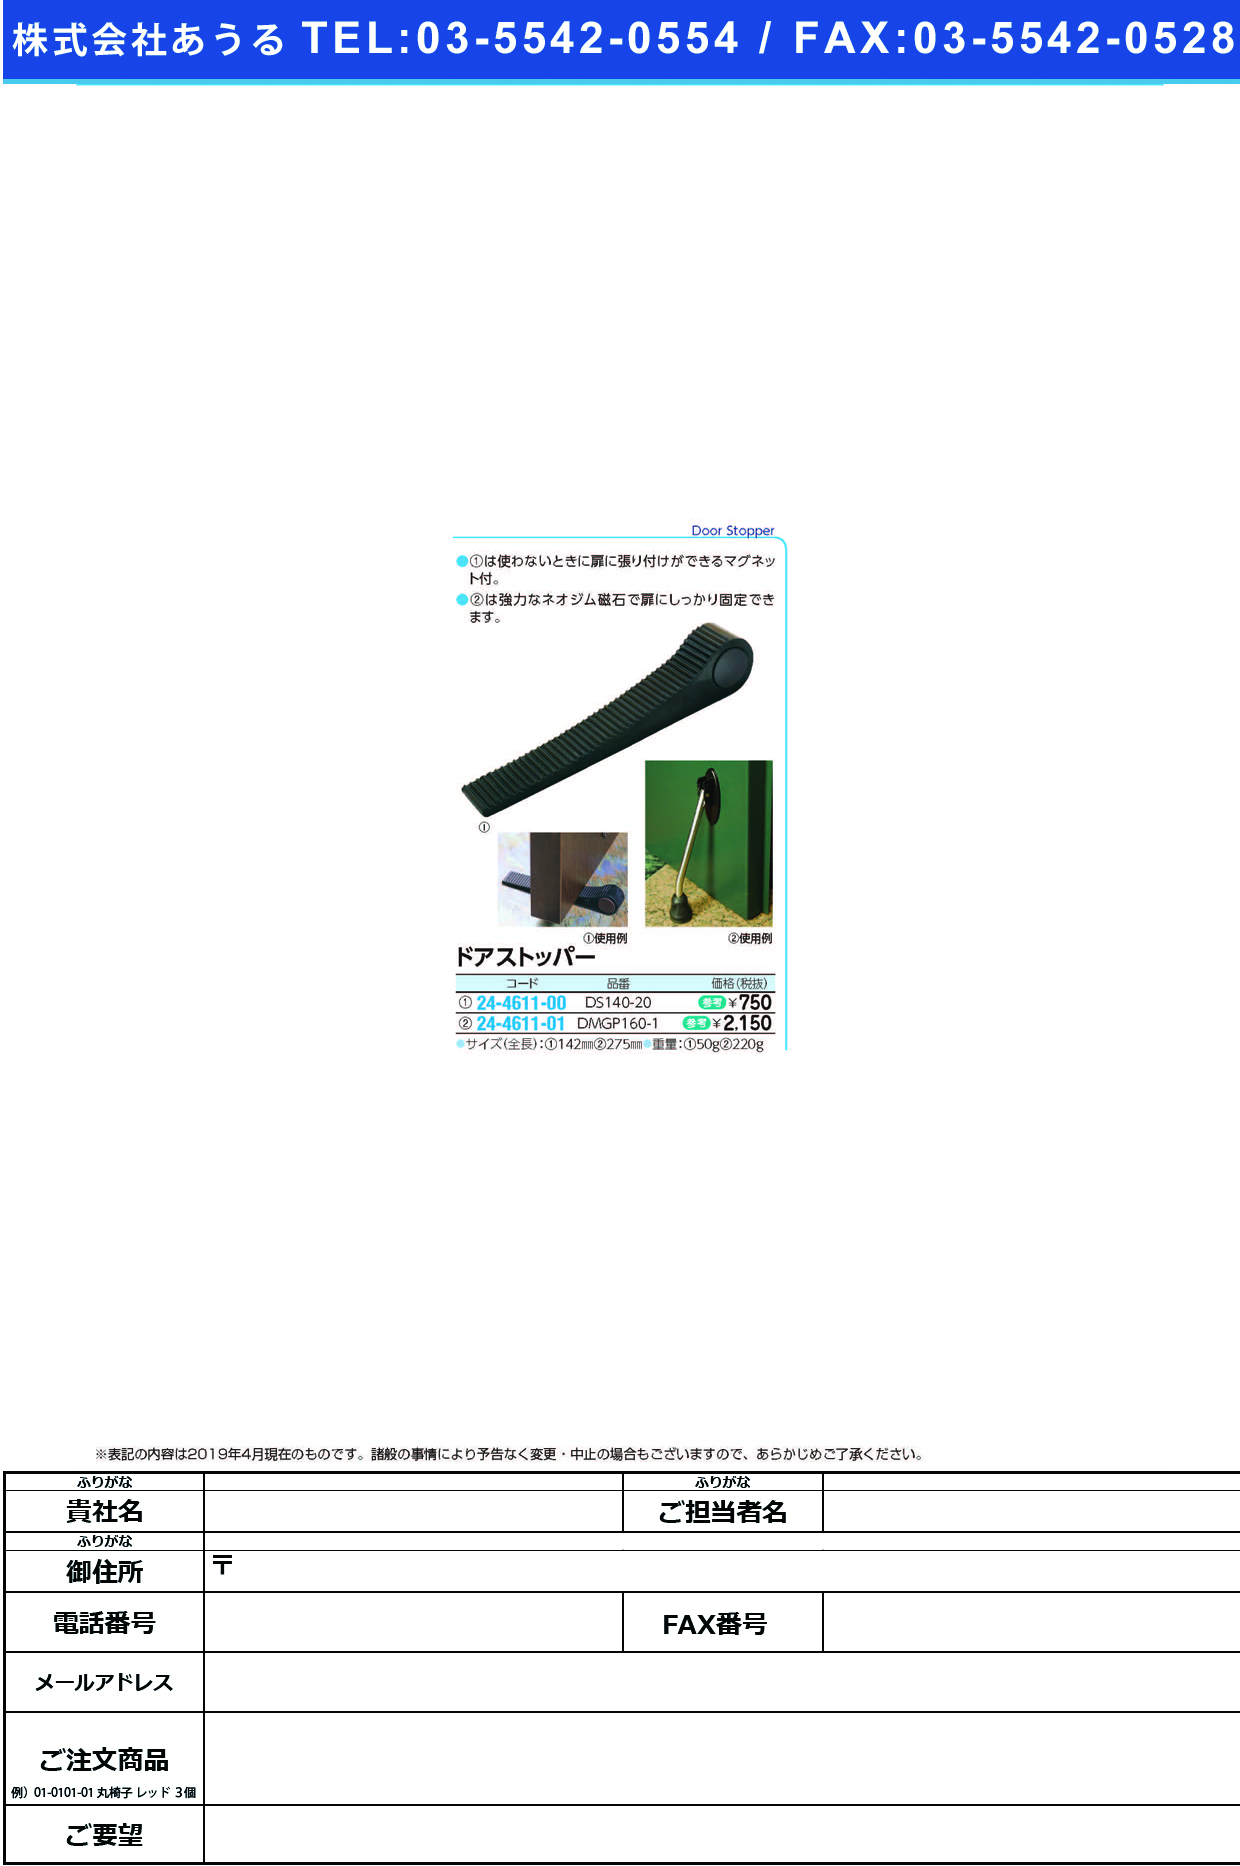 (24-4611-00)ドアストッパー DS140-20 ﾄﾞｱｽﾄｯﾊﾟｰ【1個単位】【2019年カタログ商品】